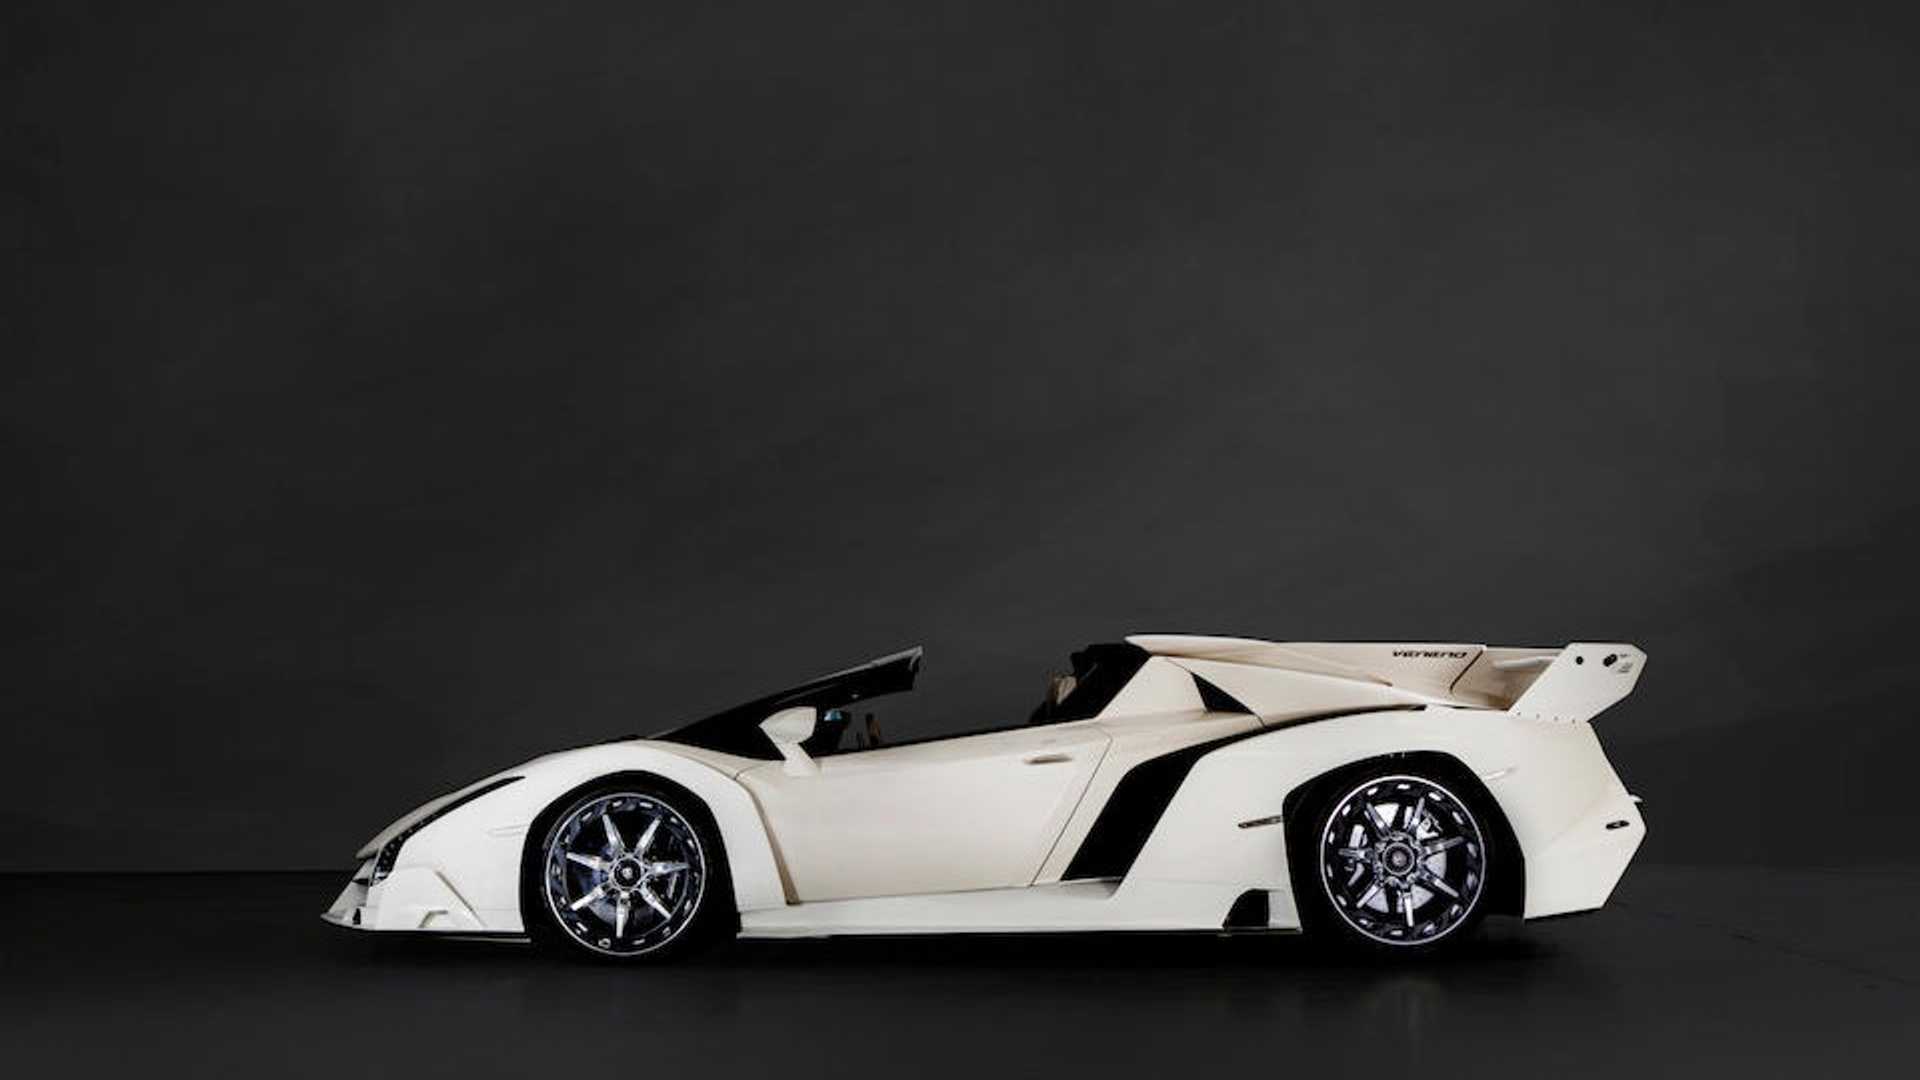 El Lamborghini más caro de la historia se ha subastado por 7.6 millones de euros... y procede de una incautación